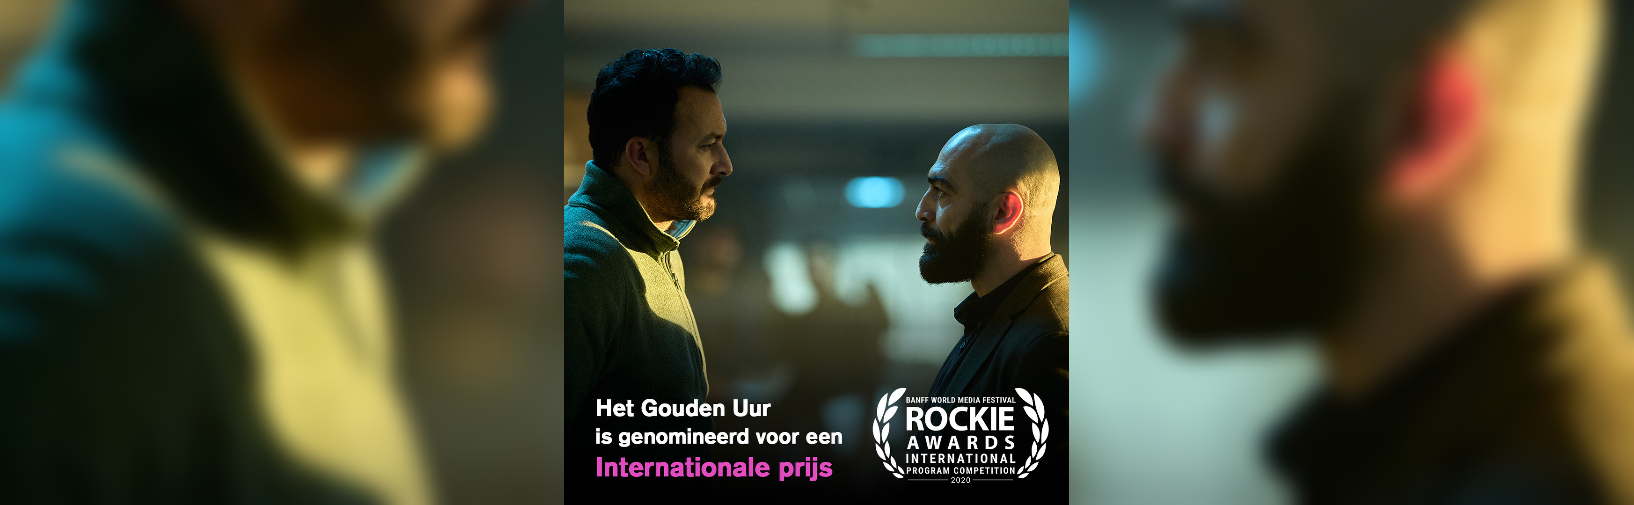 Het gouden uur is genomineerd voor de Rockie Award hero image